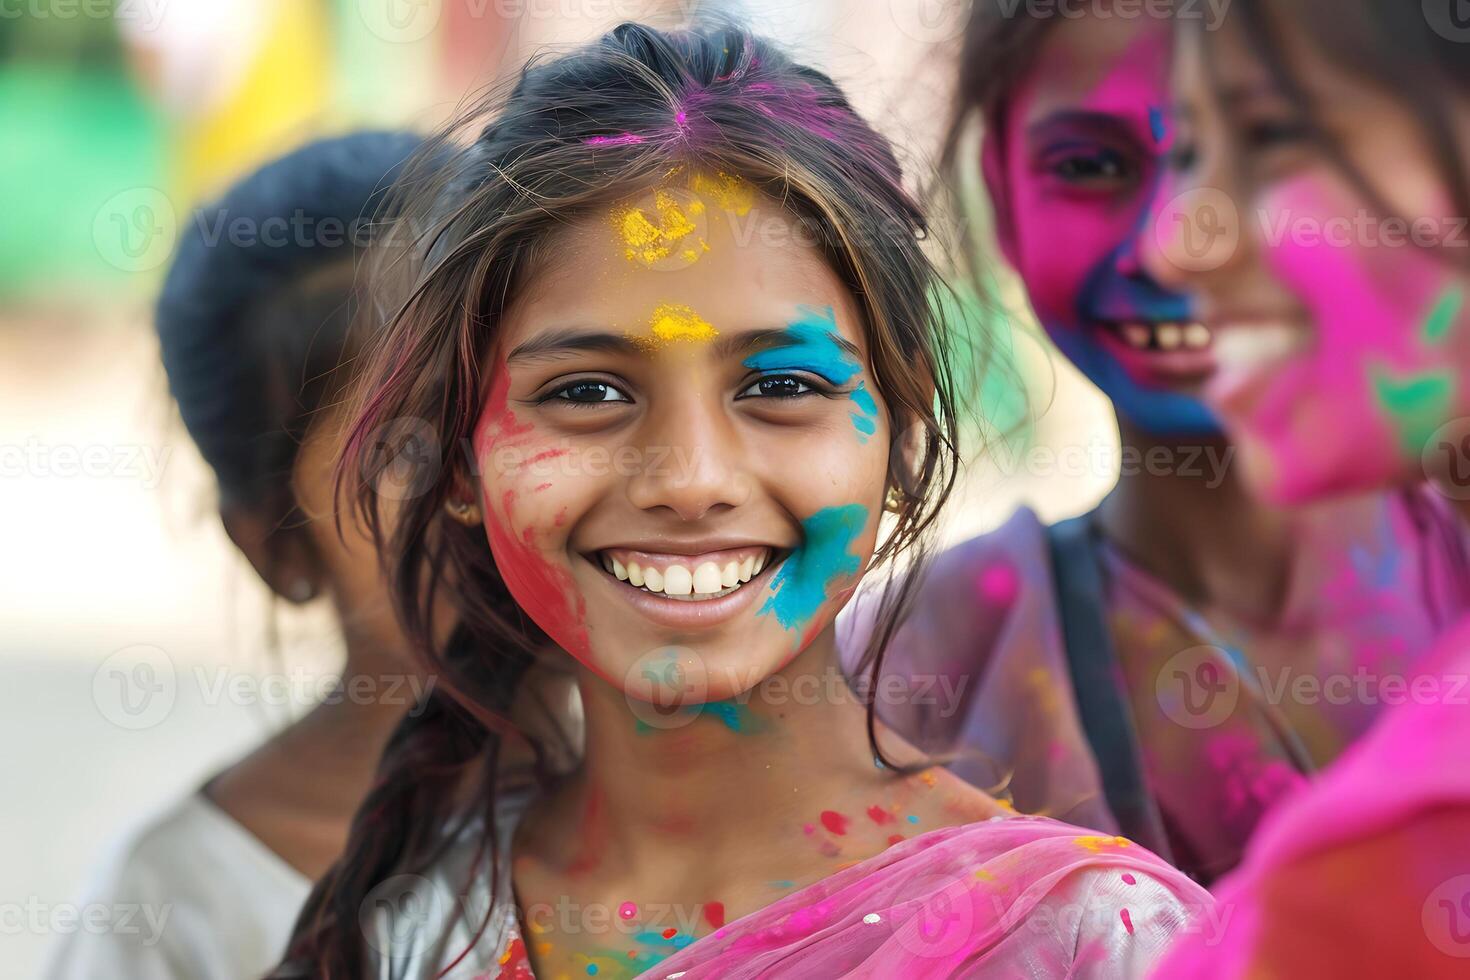 AI generated Joyful Girl Celebrating Holi with Colorful Powder on Face photo